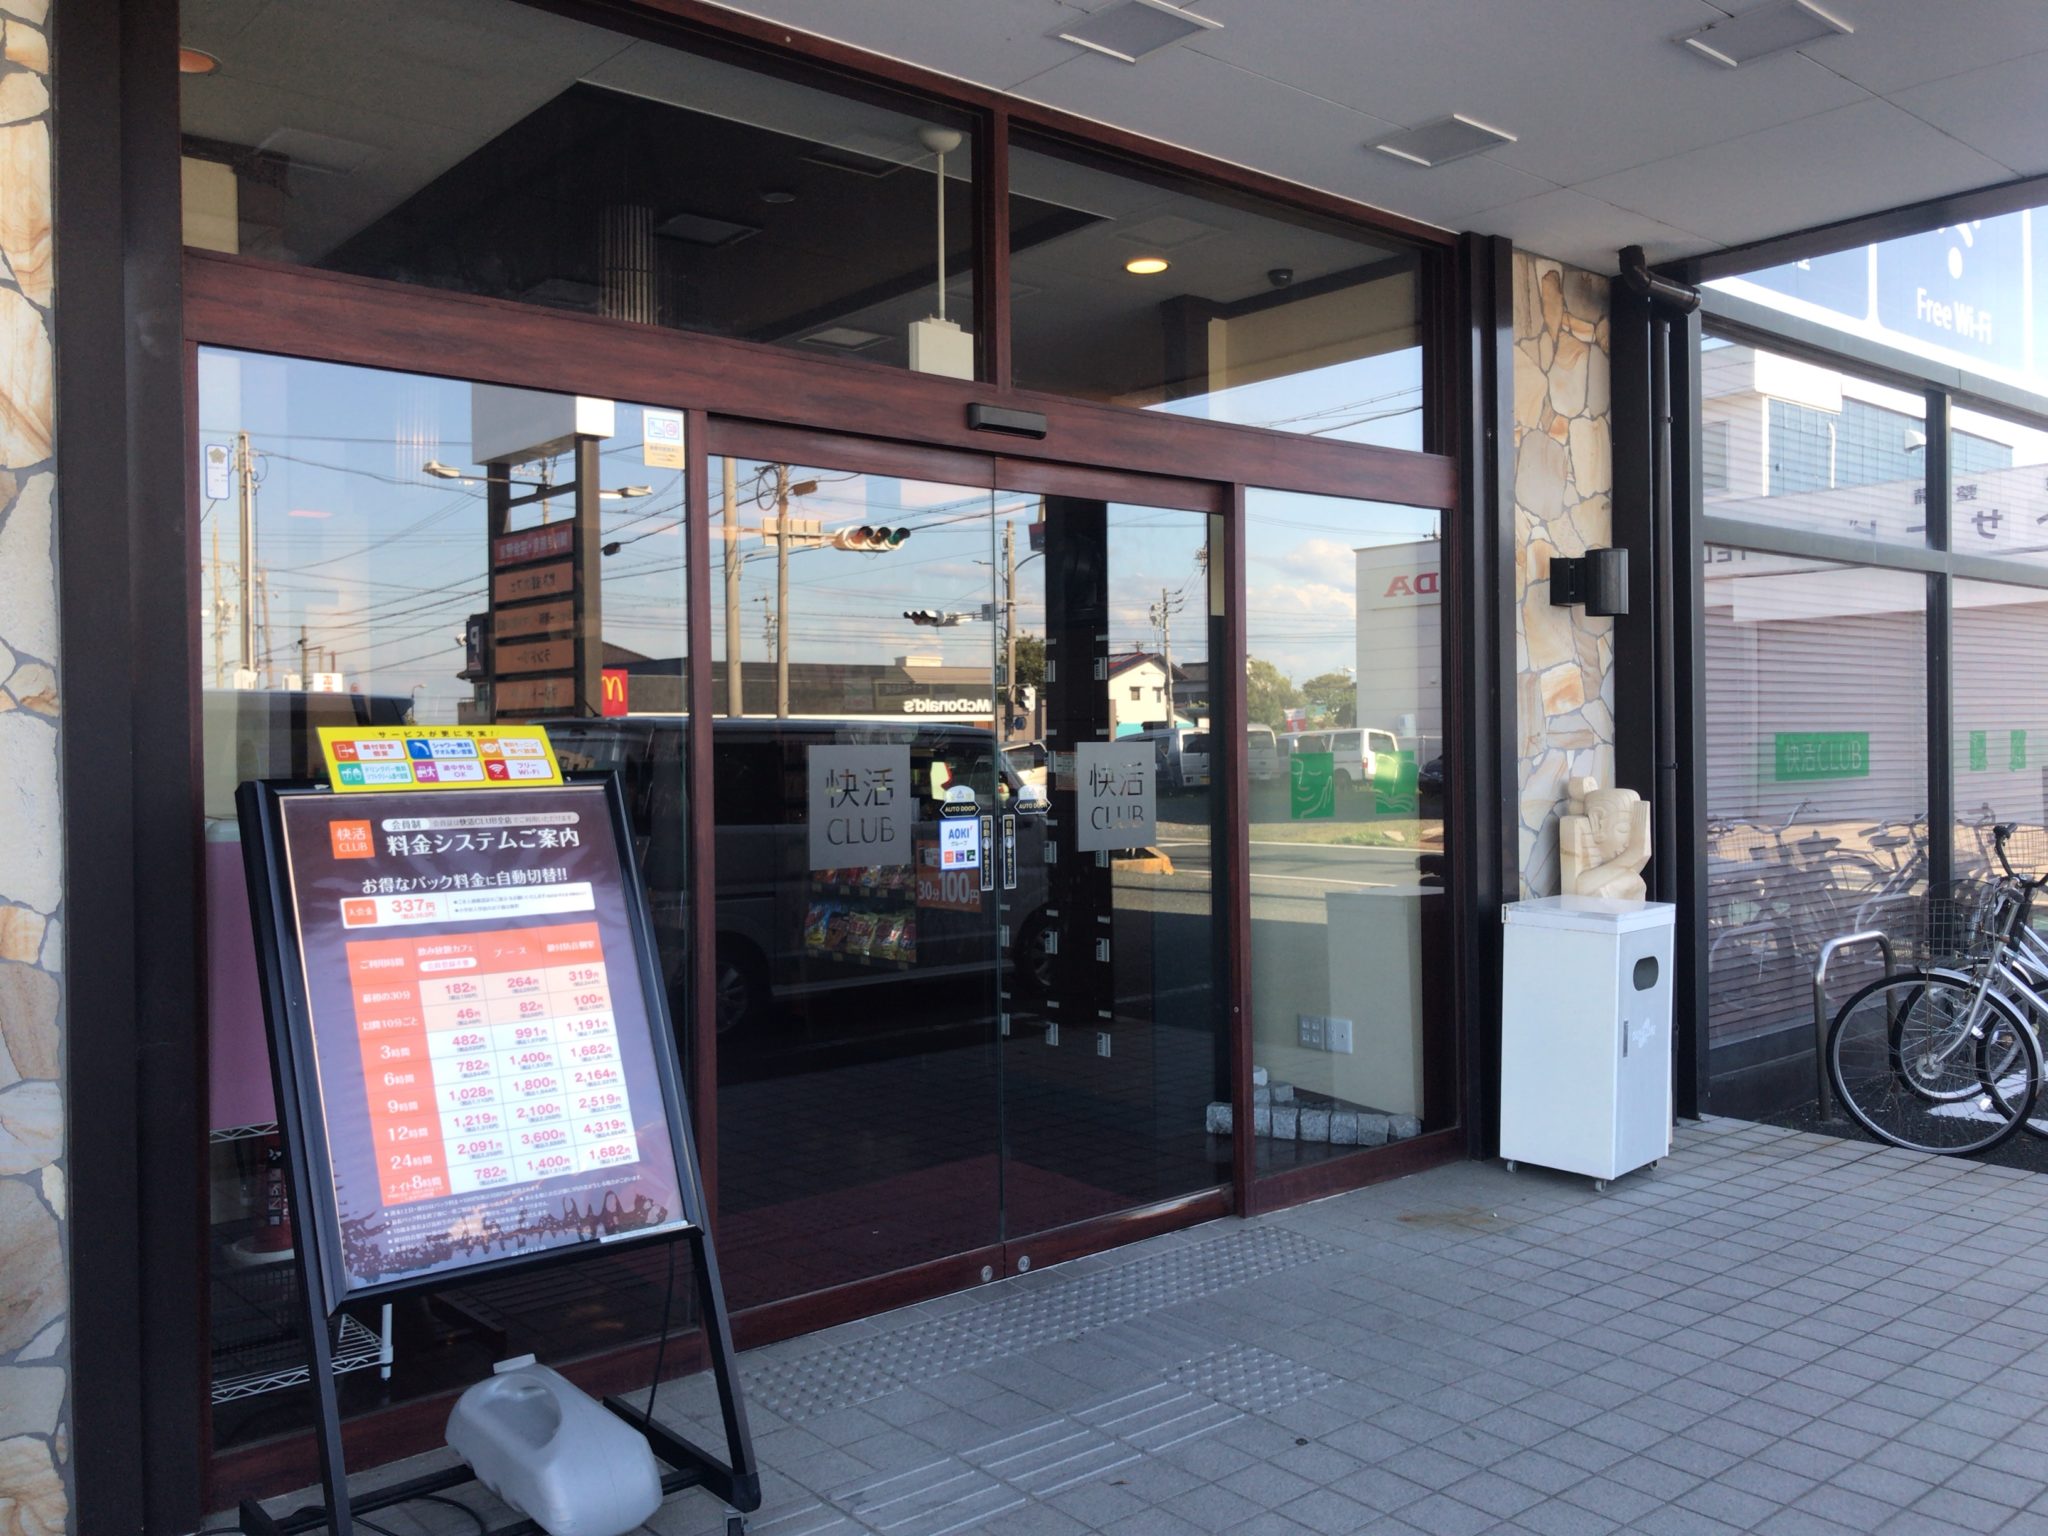 浜松駅から車で12分 快活クラブ 浜松都盛店をレポート 日本全国のネカフェ 漫画喫茶マップのヒマップ